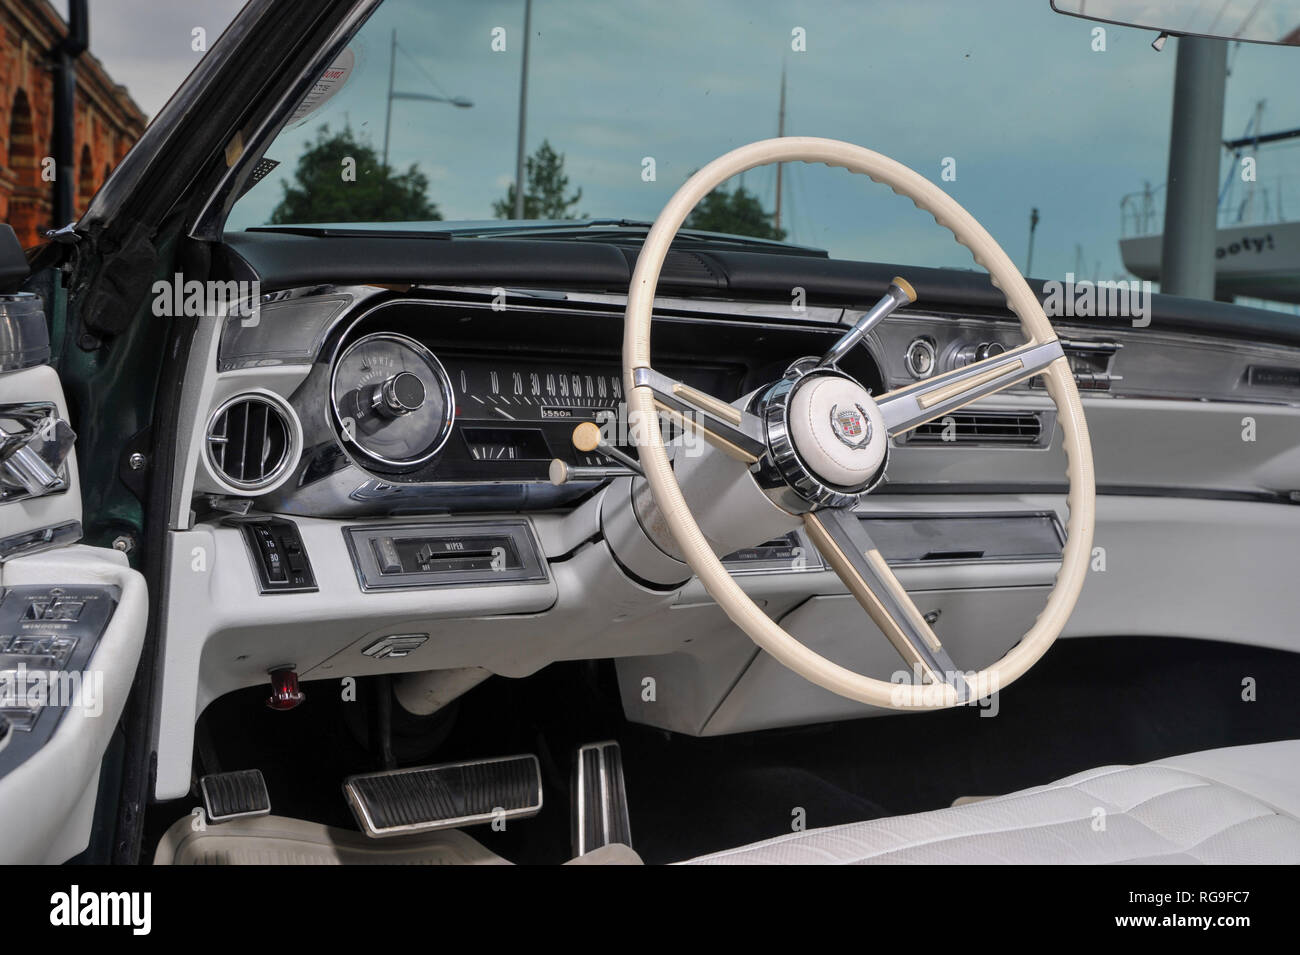 1966 Cadillac Eldorado convertible - classic American car Stock Photo -  Alamy